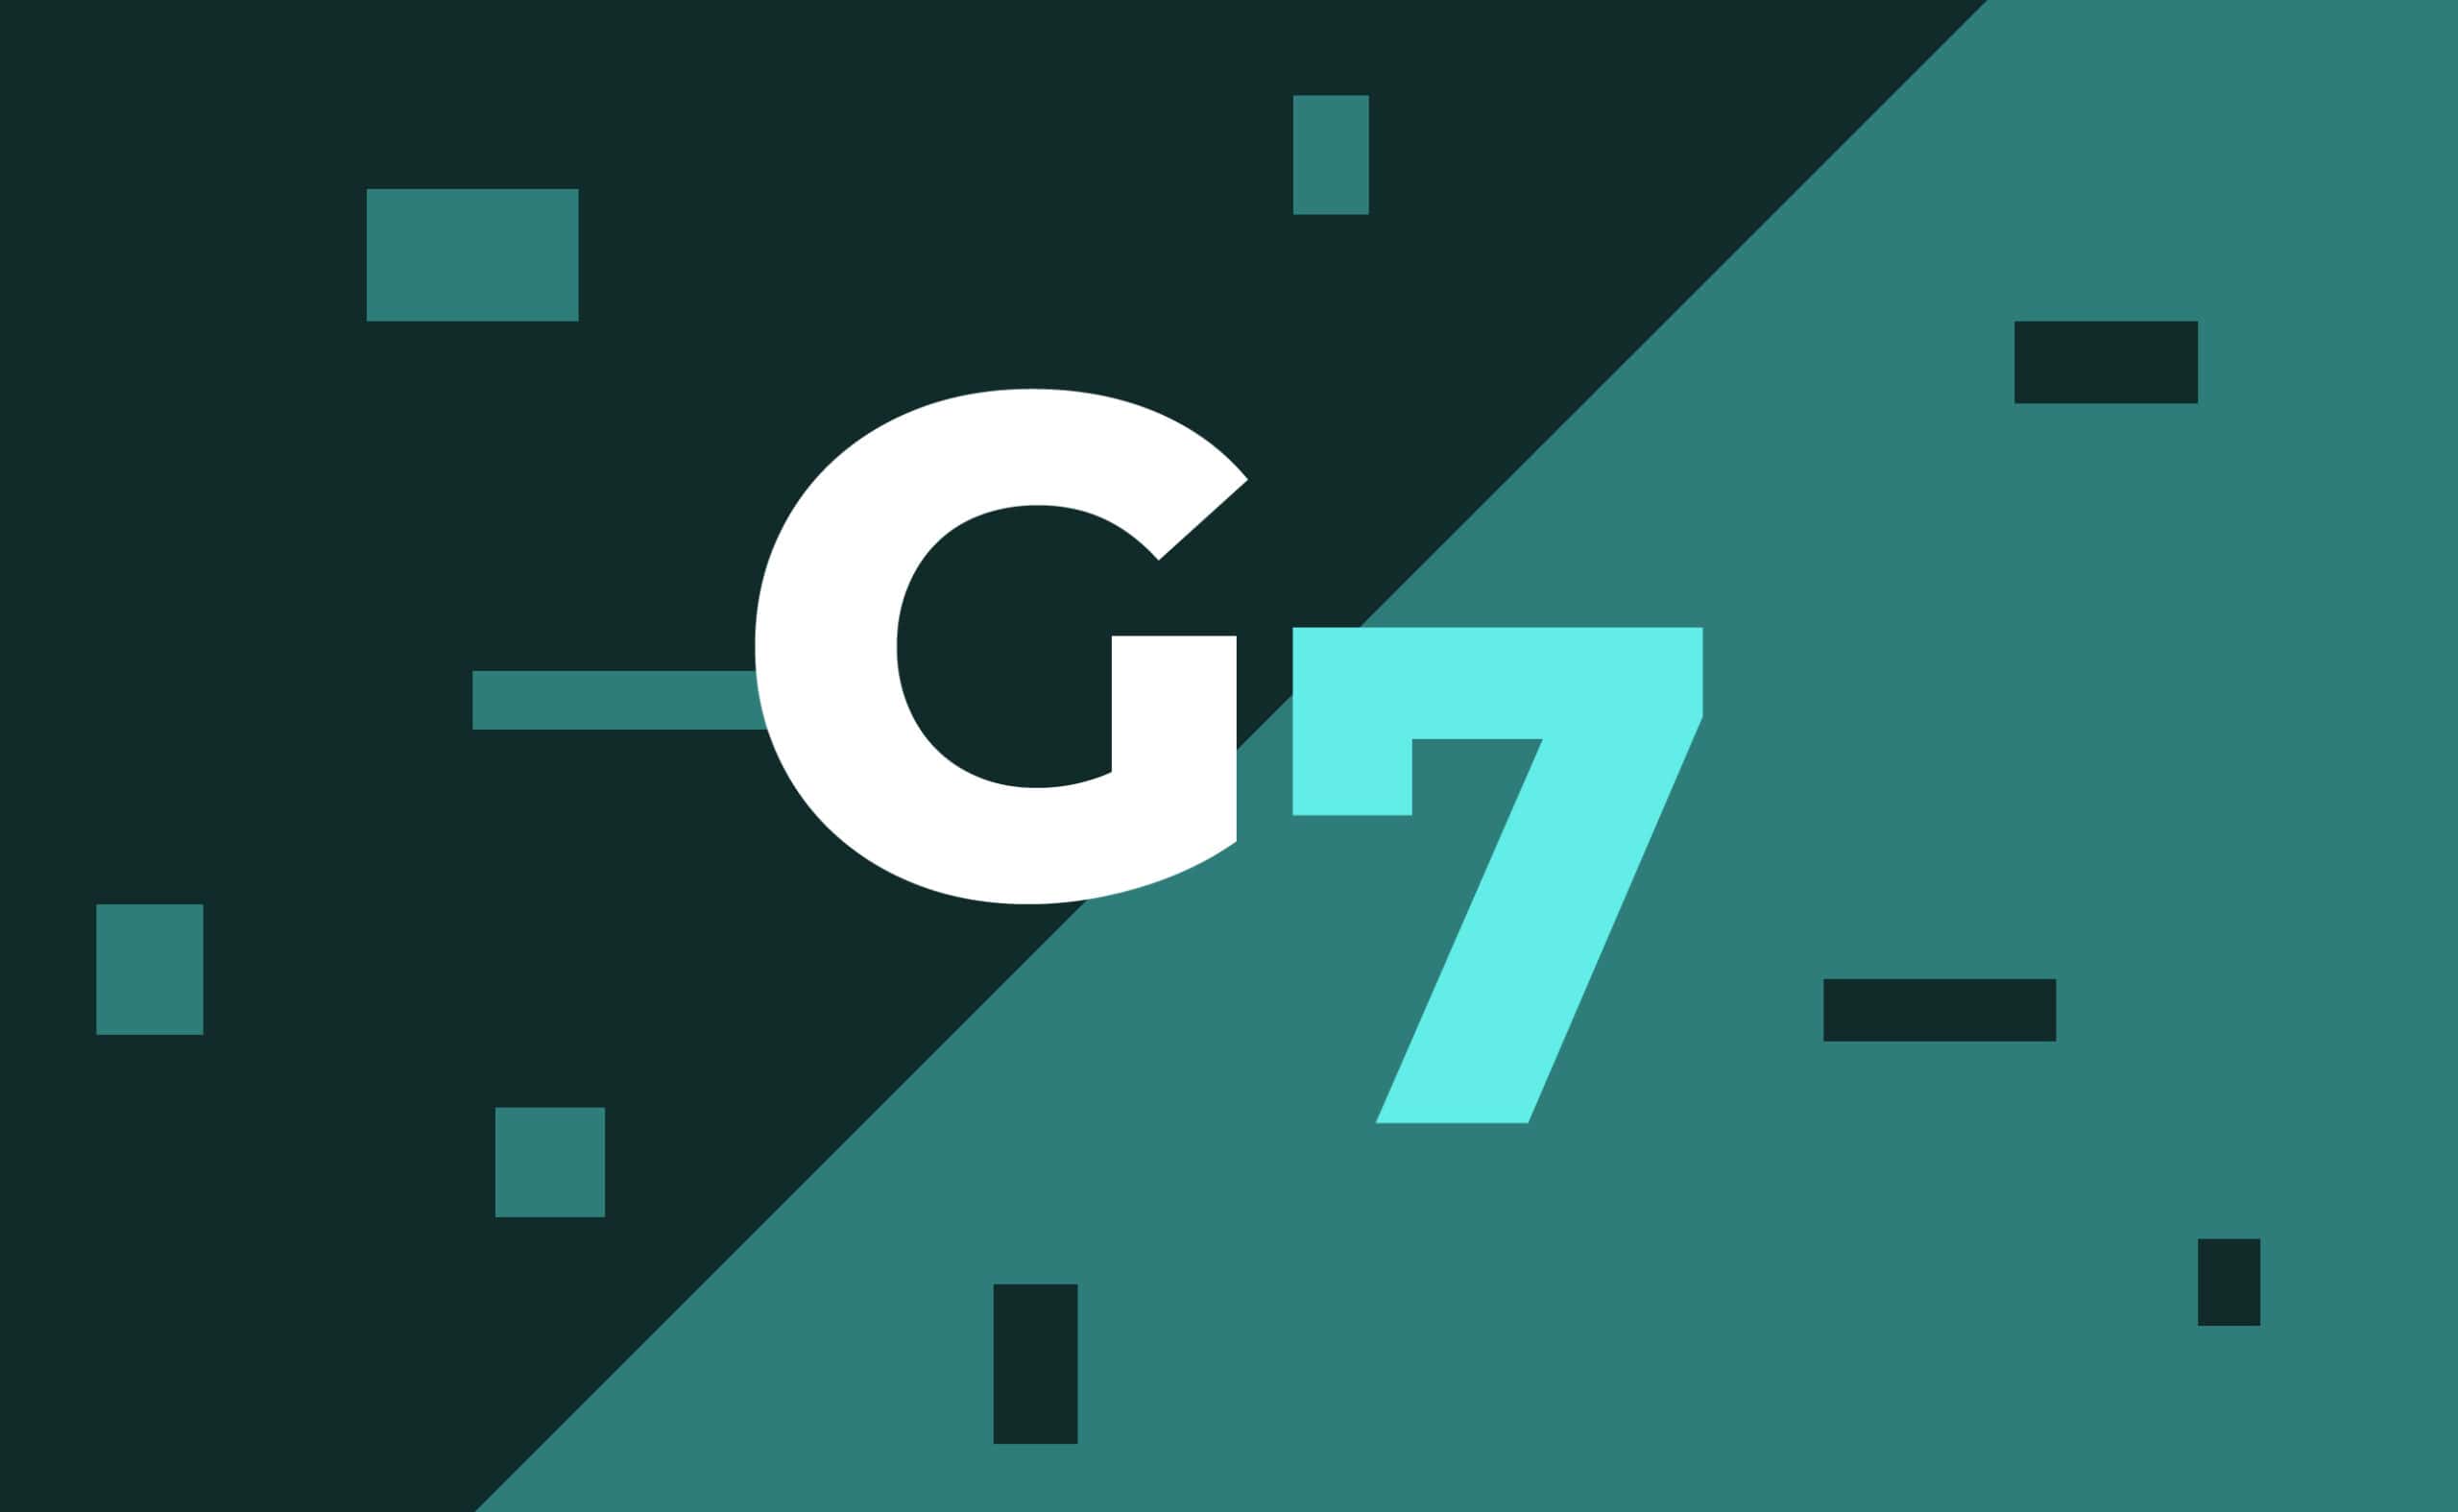 Страны G7 представят проект глобальной нормативной базы в сфере криптовалют к июлю этого года. Заглавный коллаж новости.